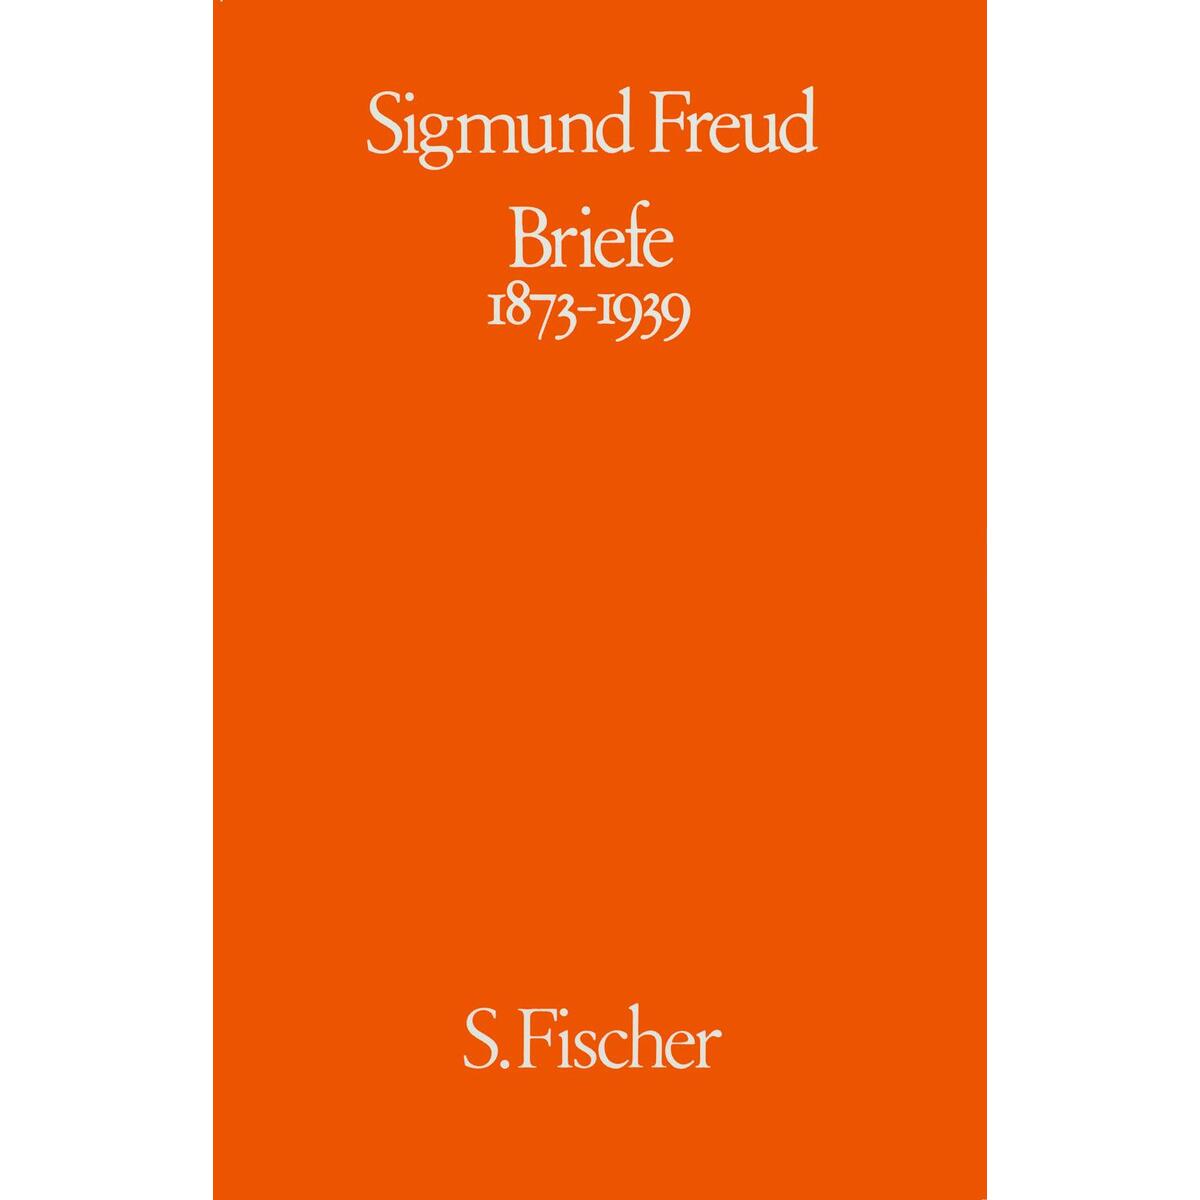 Briefe 1873-1939 von FISCHER, S.